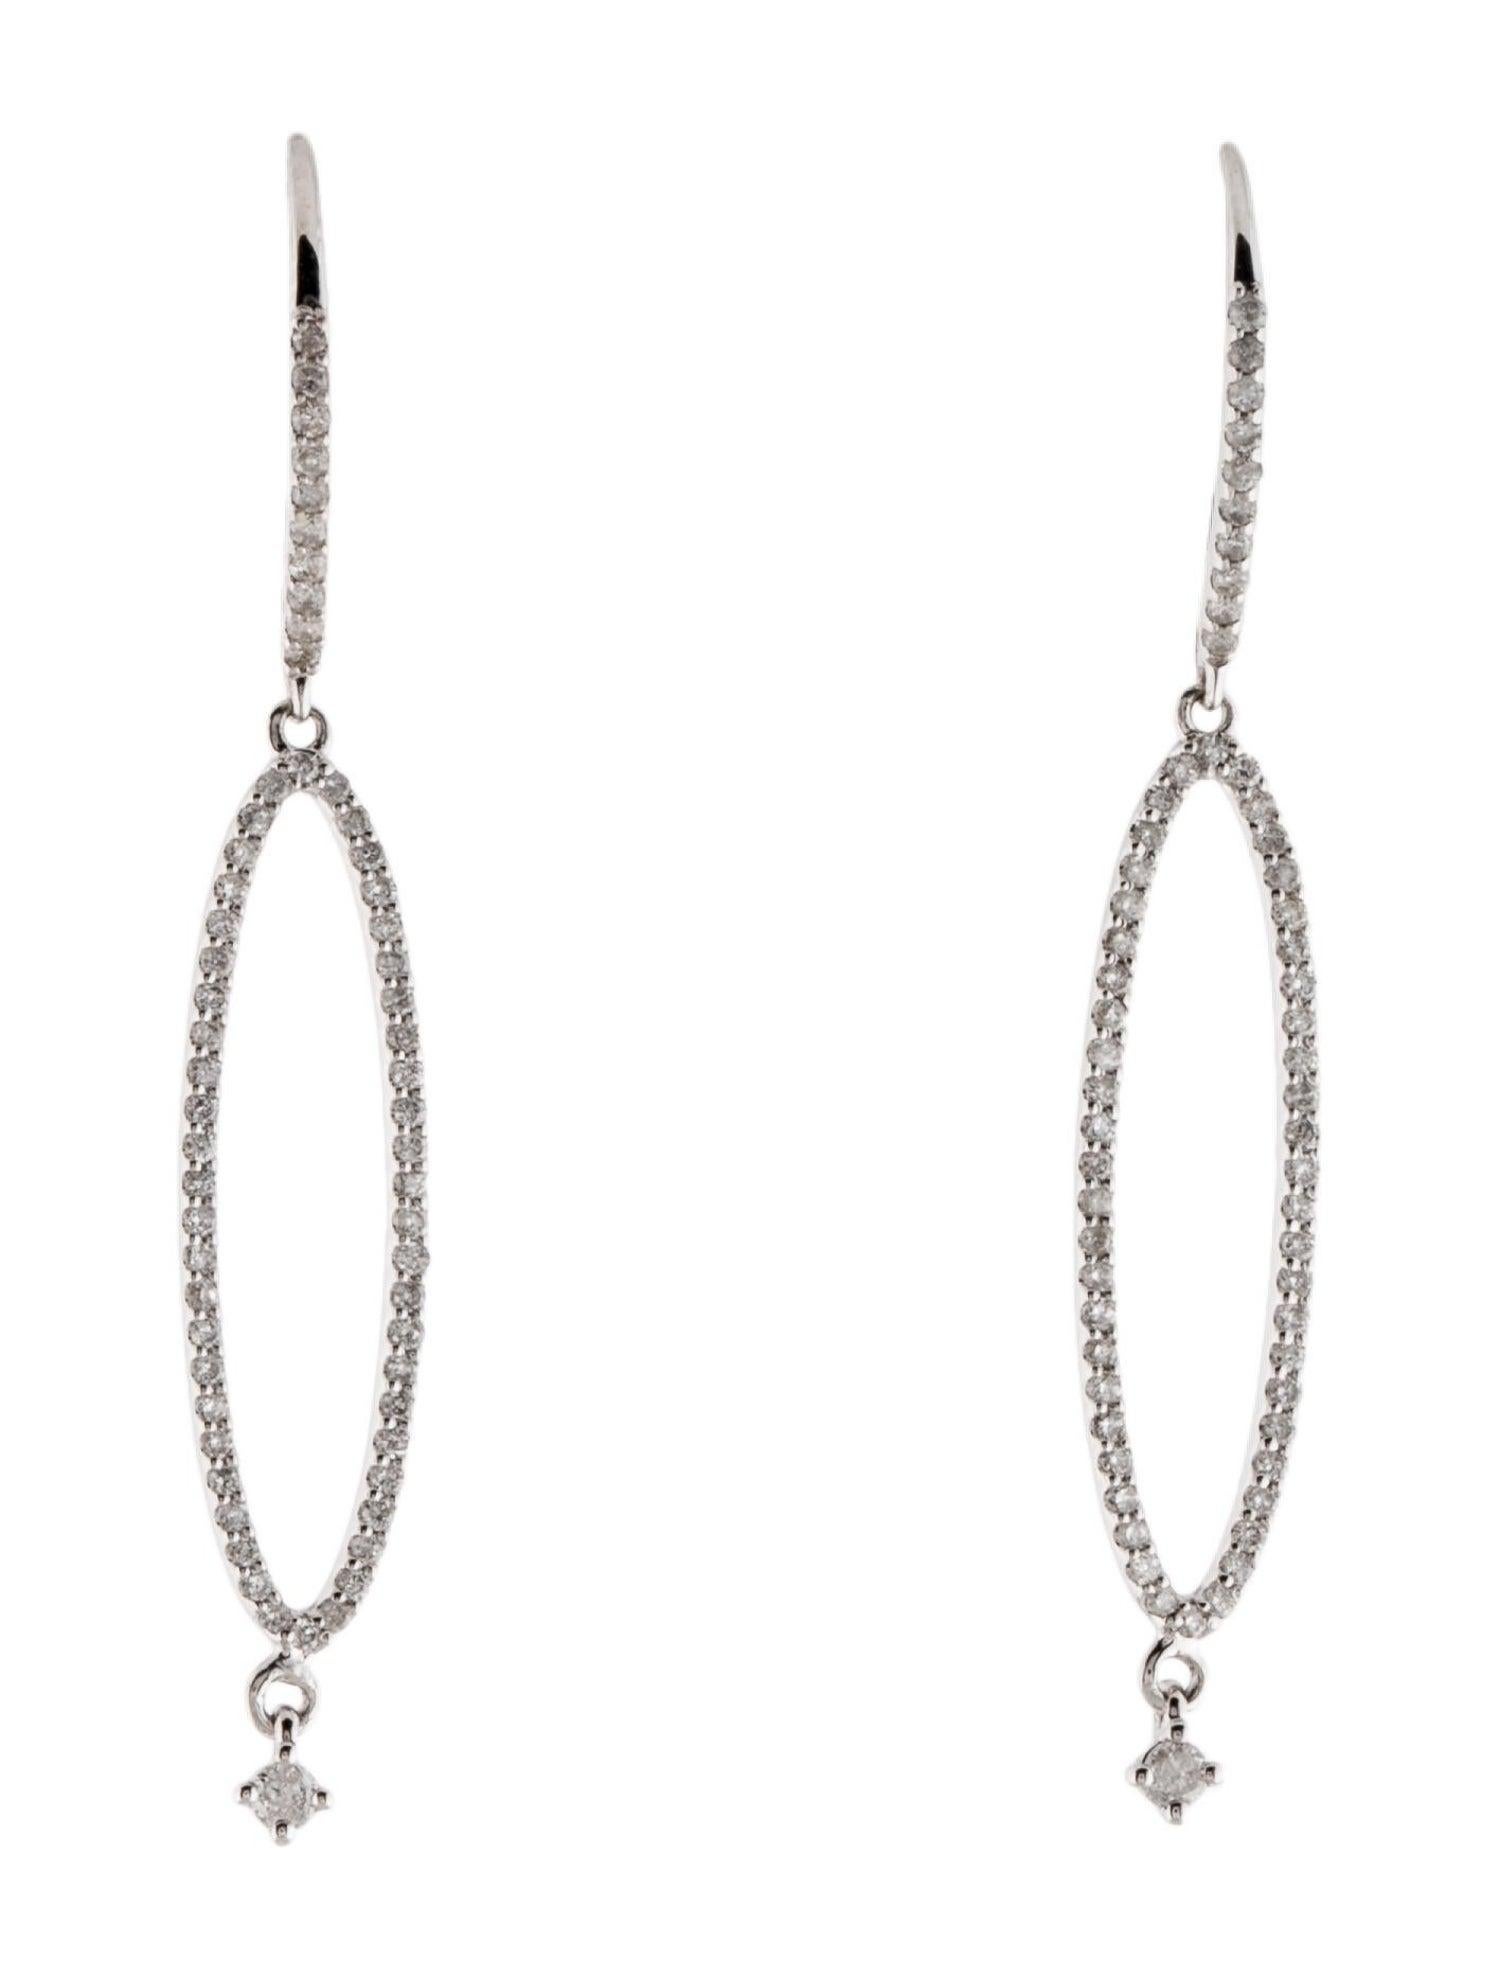 Boucles d'oreilles pendantes en diamant 14K - Scintillement exquis, Glamour Timeless, Design Elegance Neuf - En vente à Holtsville, NY